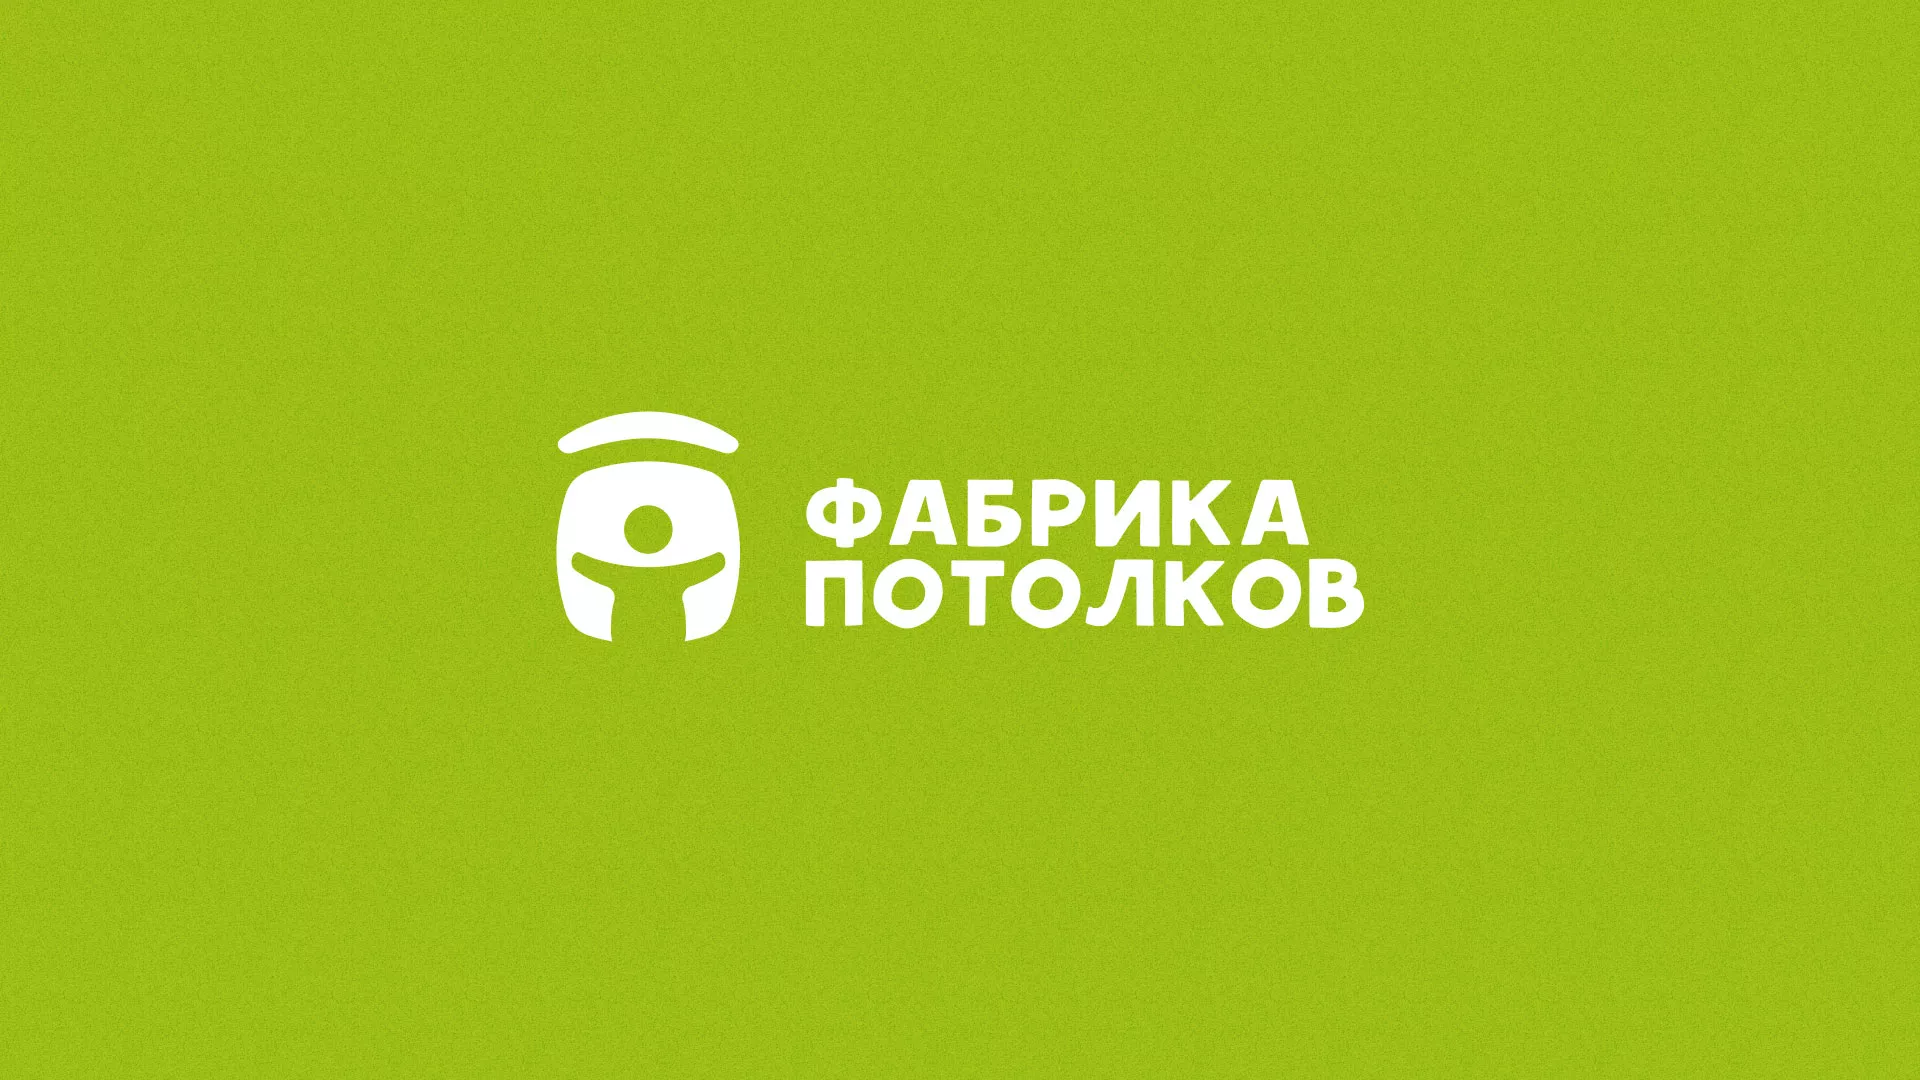 Разработка логотипа для производства натяжных потолков в Гавриловом Посаде